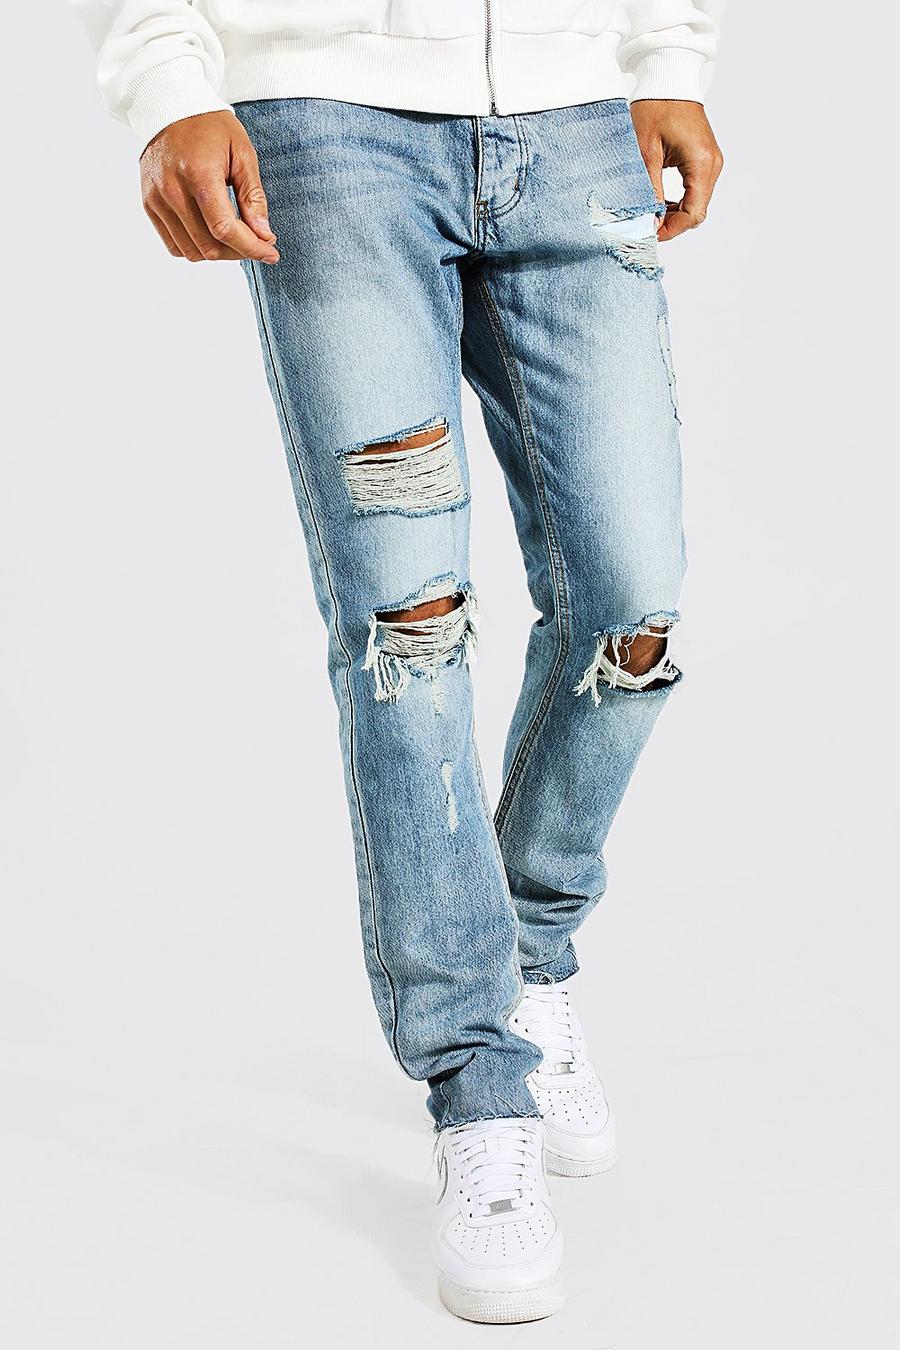 כחול עתיק ג'ינס ripped בגזרה צרה עם קרעים במכפלת, לגברים גבוהים image number 1